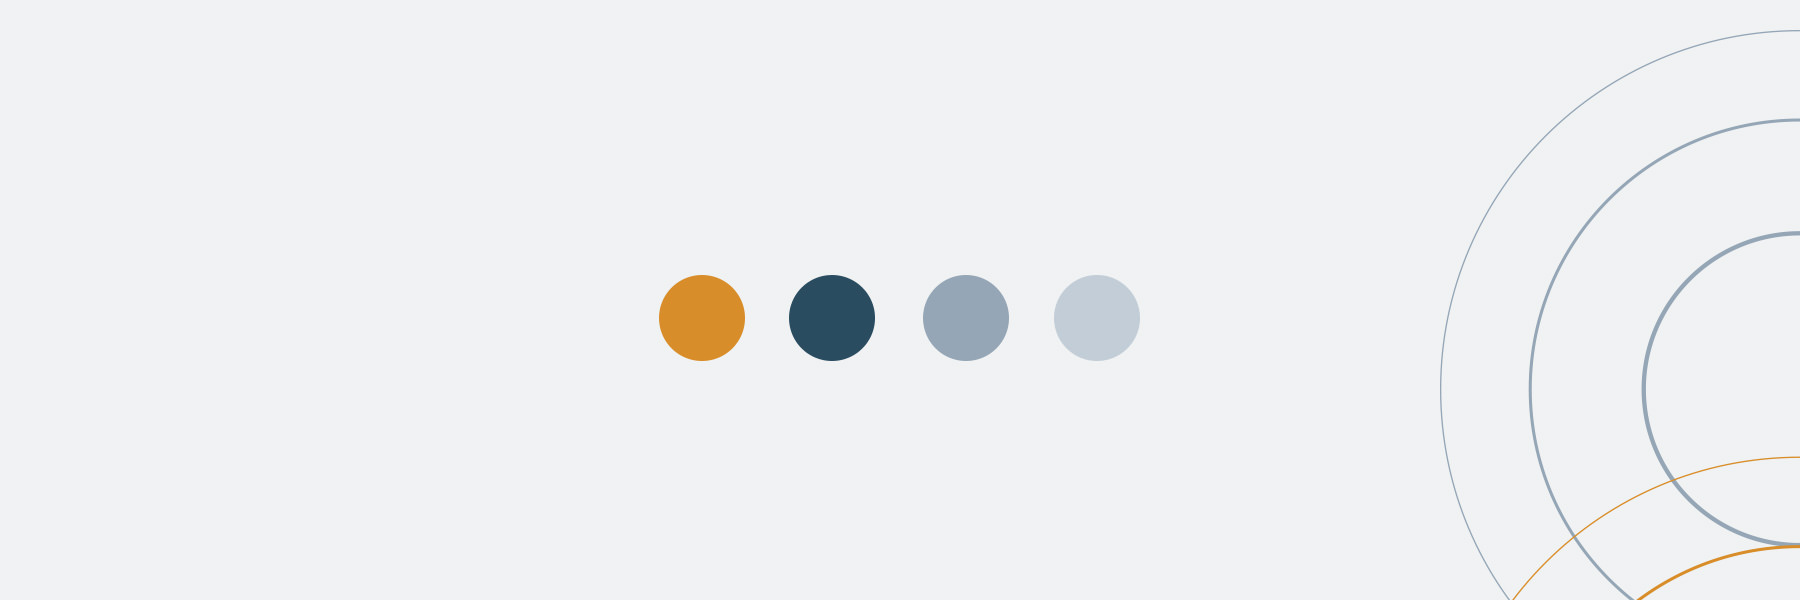 Logo und Corporate Design für Praxis gestalten lassen, Farbpalette